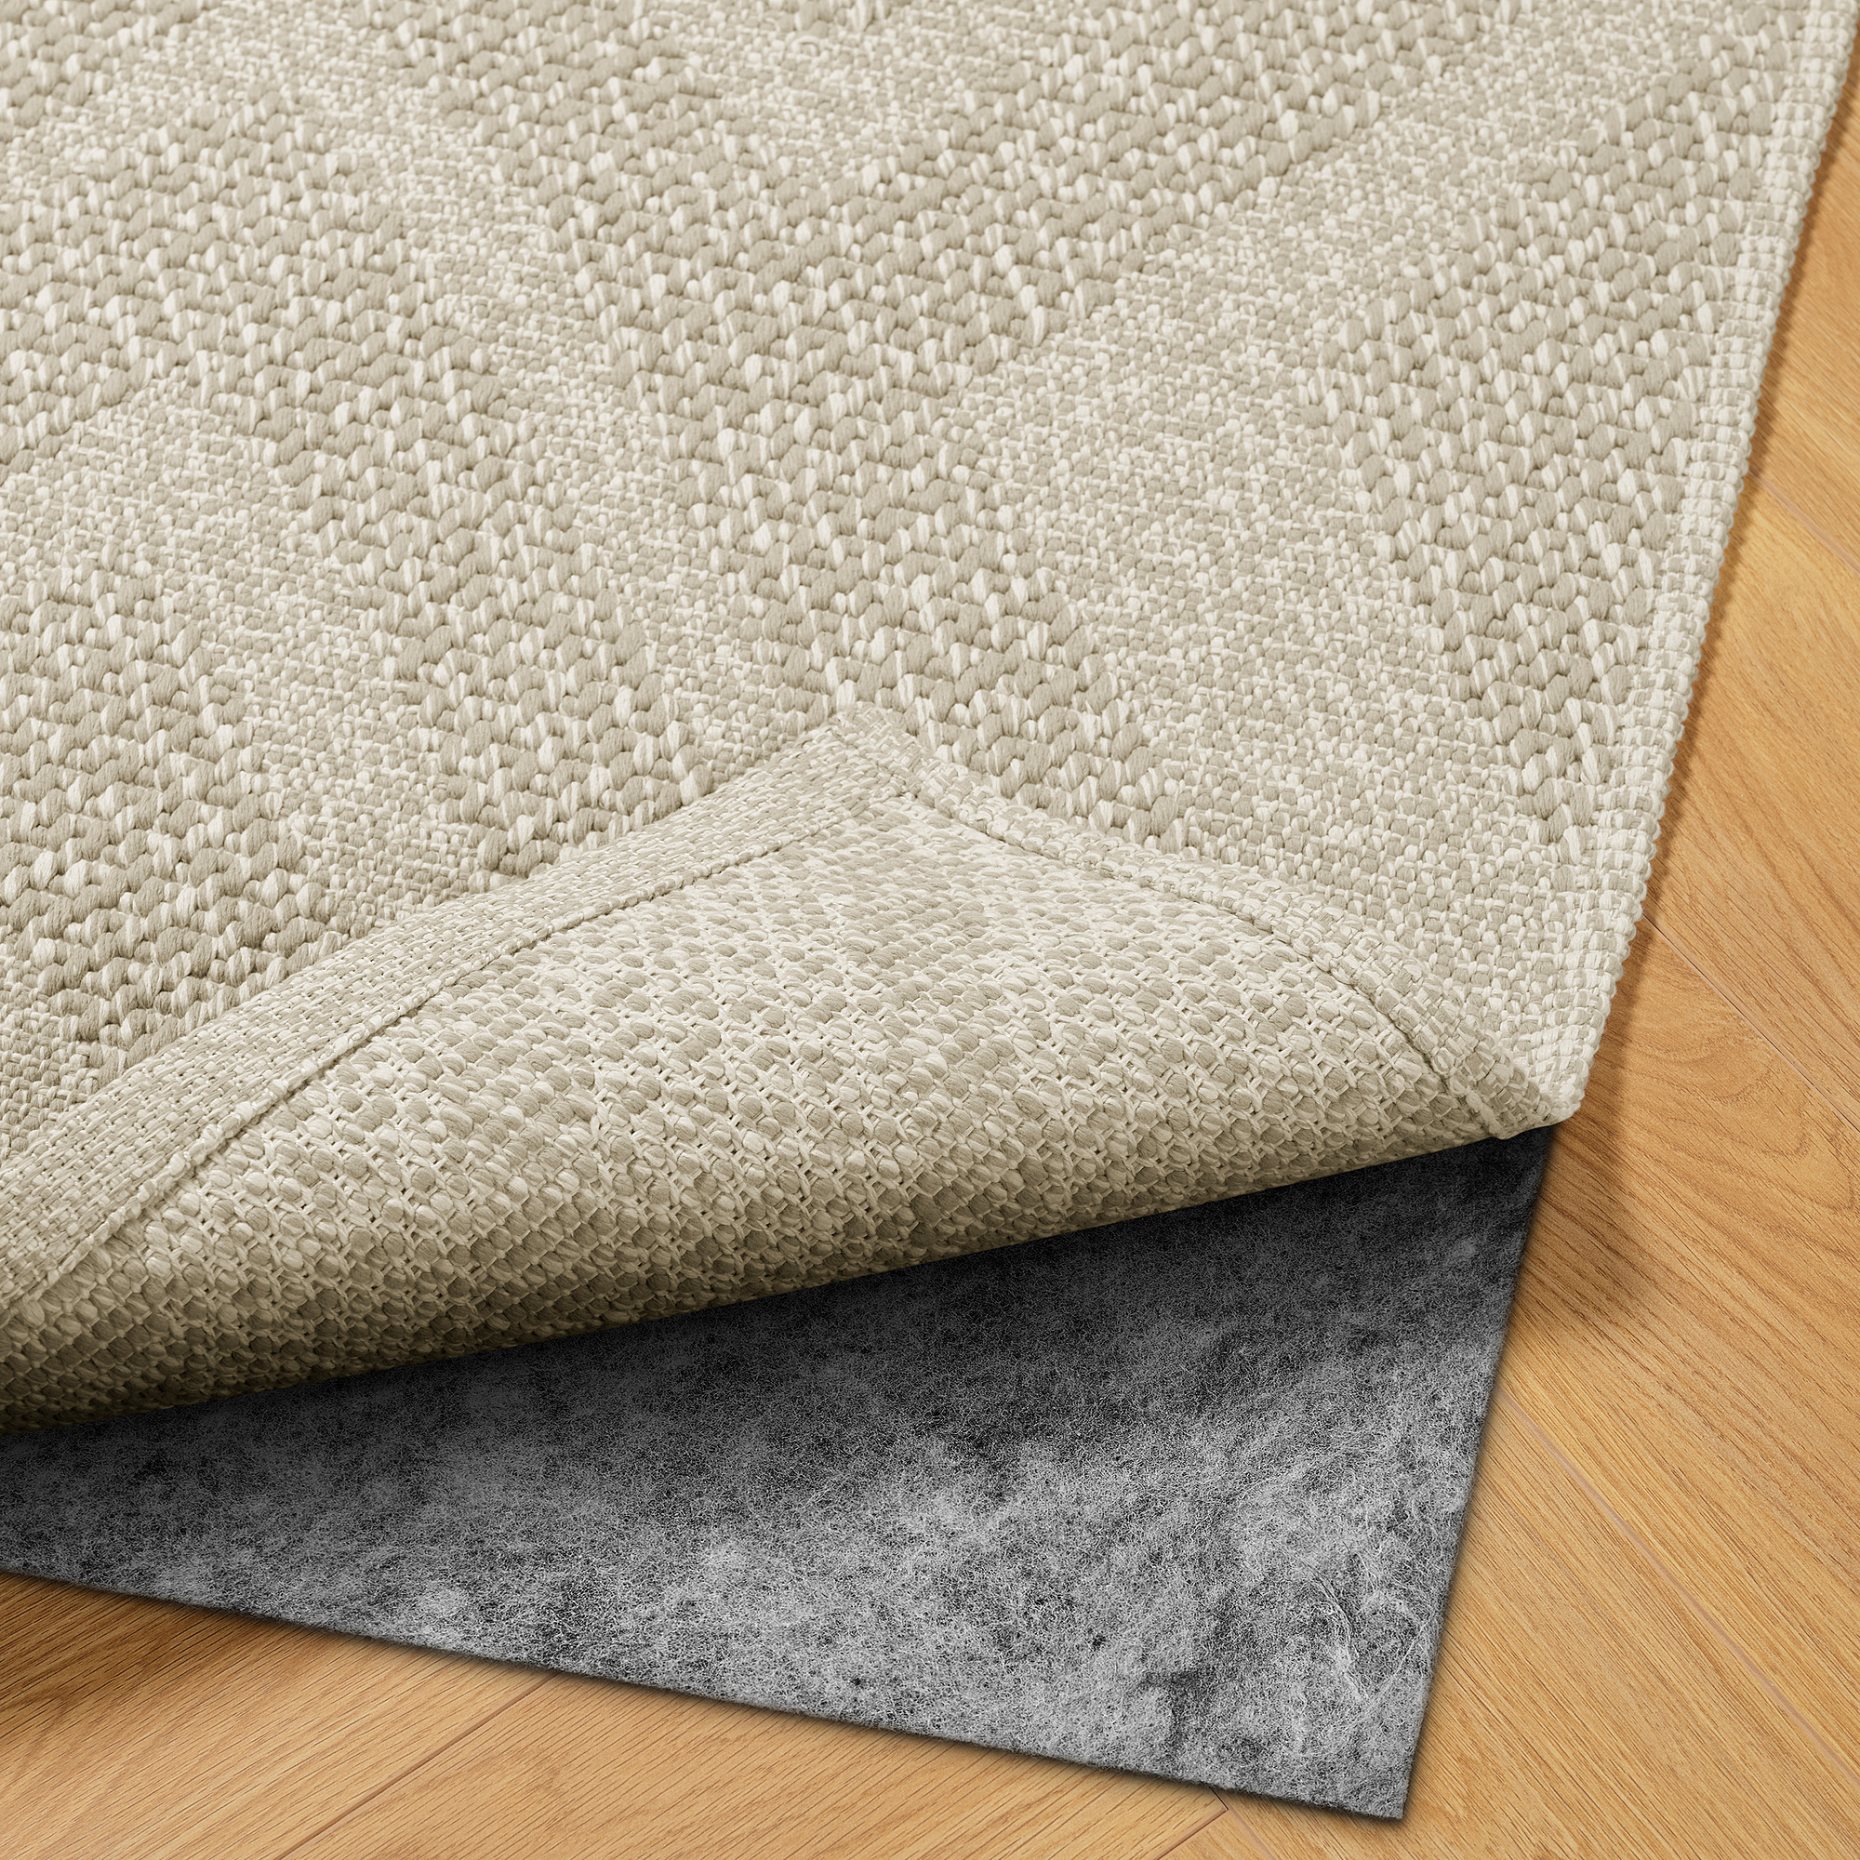 FULLMAKT, килим гладко тъкан, на откр/закрито, 705.731.18